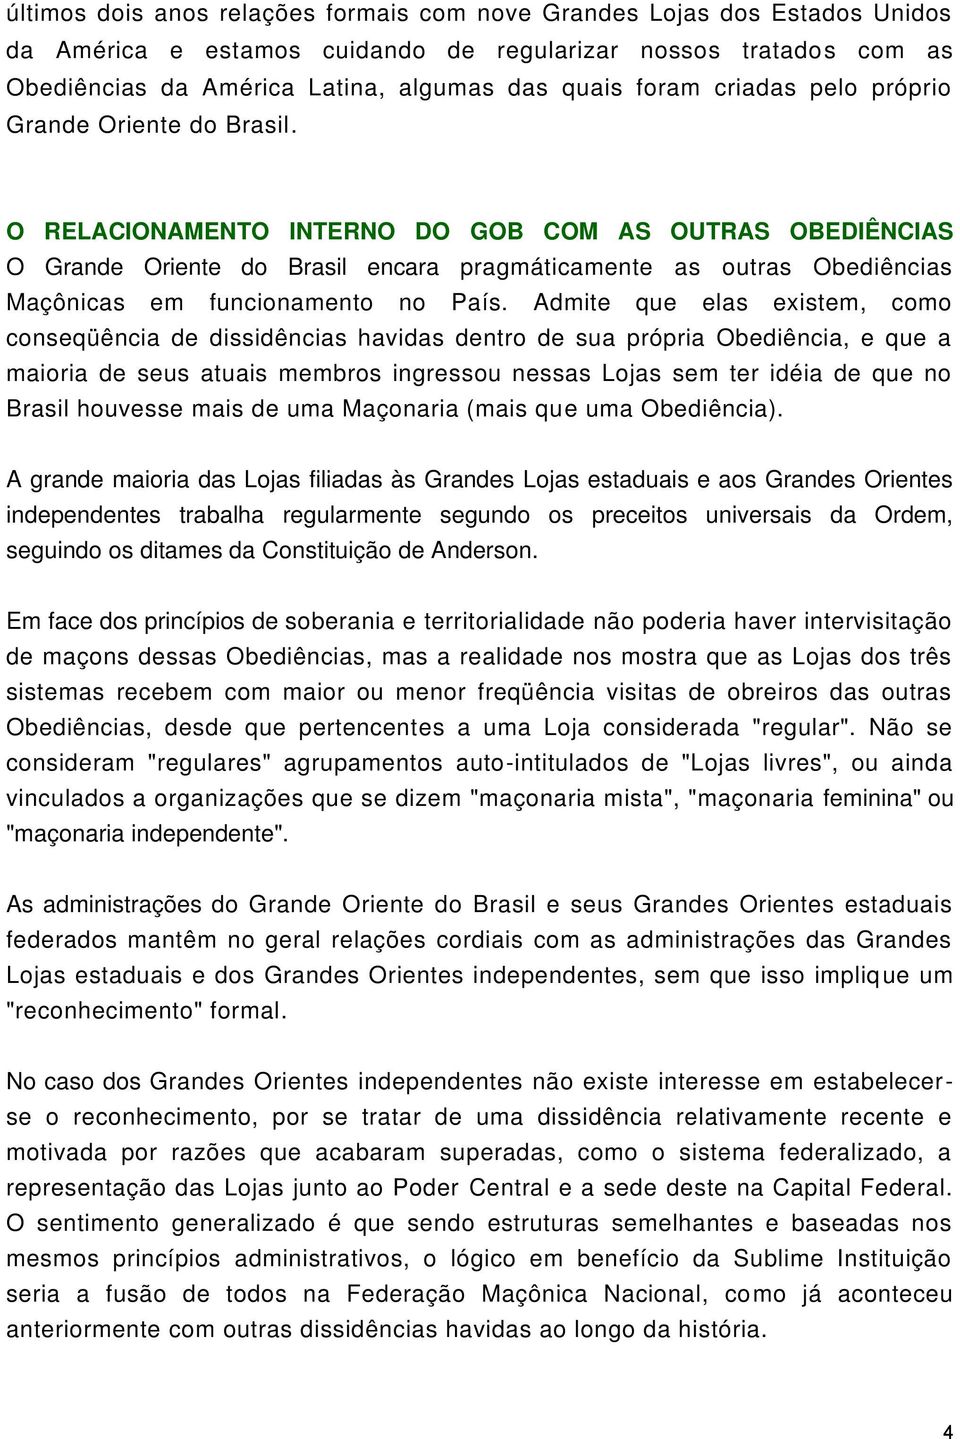 O RELACIONAMENTO INTERNO DO GOB COM AS OUTRAS OBEDIÊNCIAS O Grande Oriente do Brasil encara pragmáticamente as outras Obediências Maçônicas em funcionamento no País.